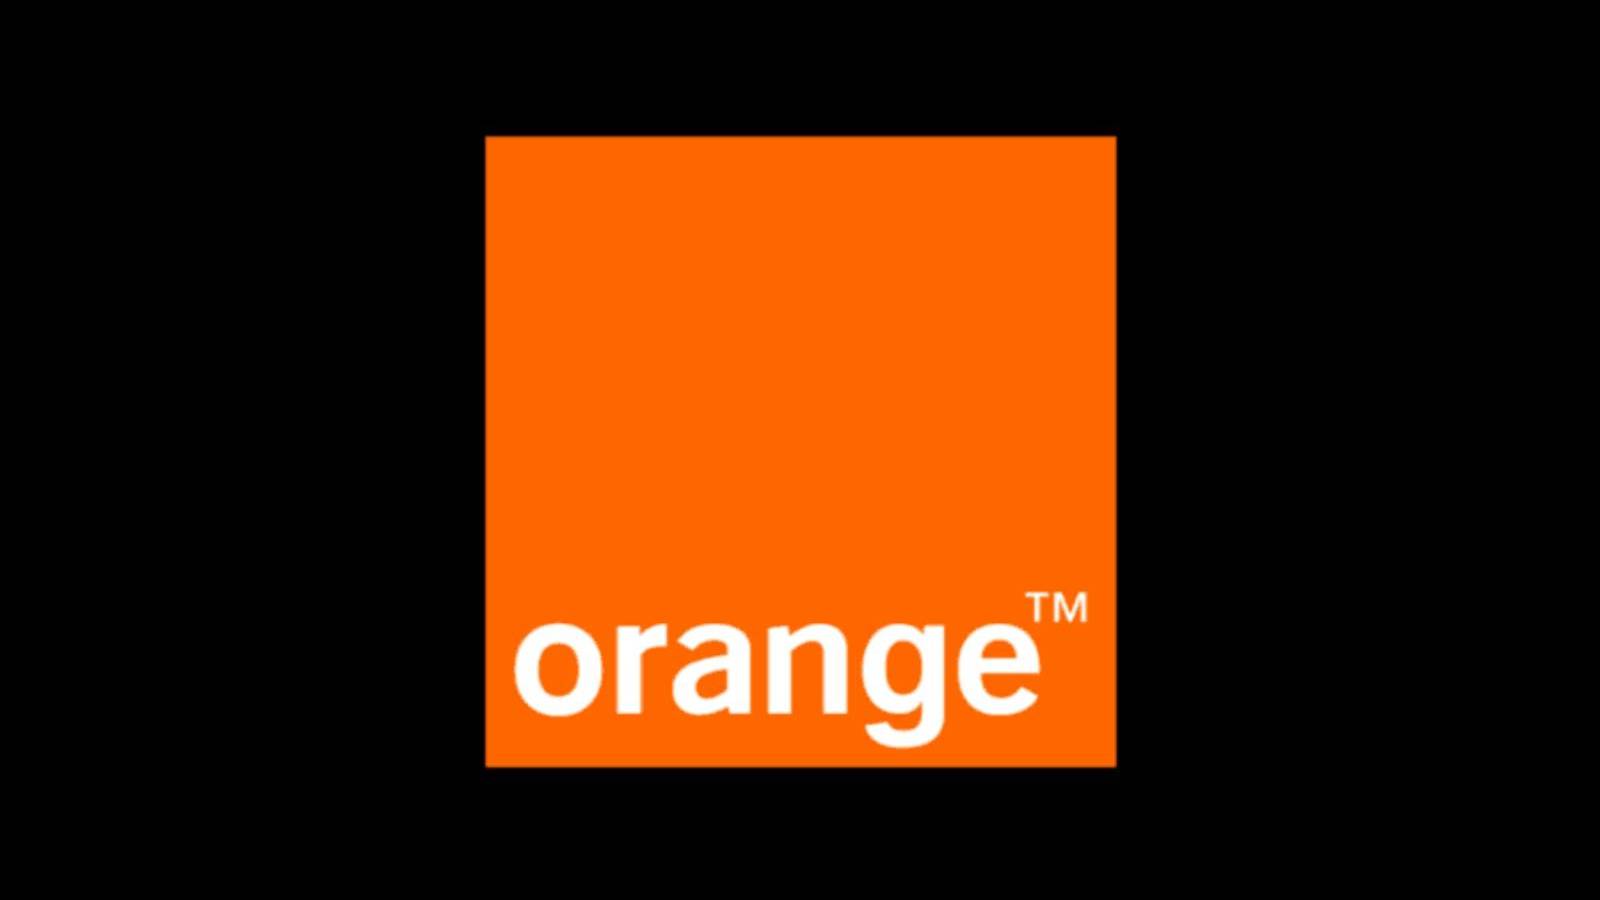 OFICJALNE rozwiązanie Orange ogłoszone milionom klientów